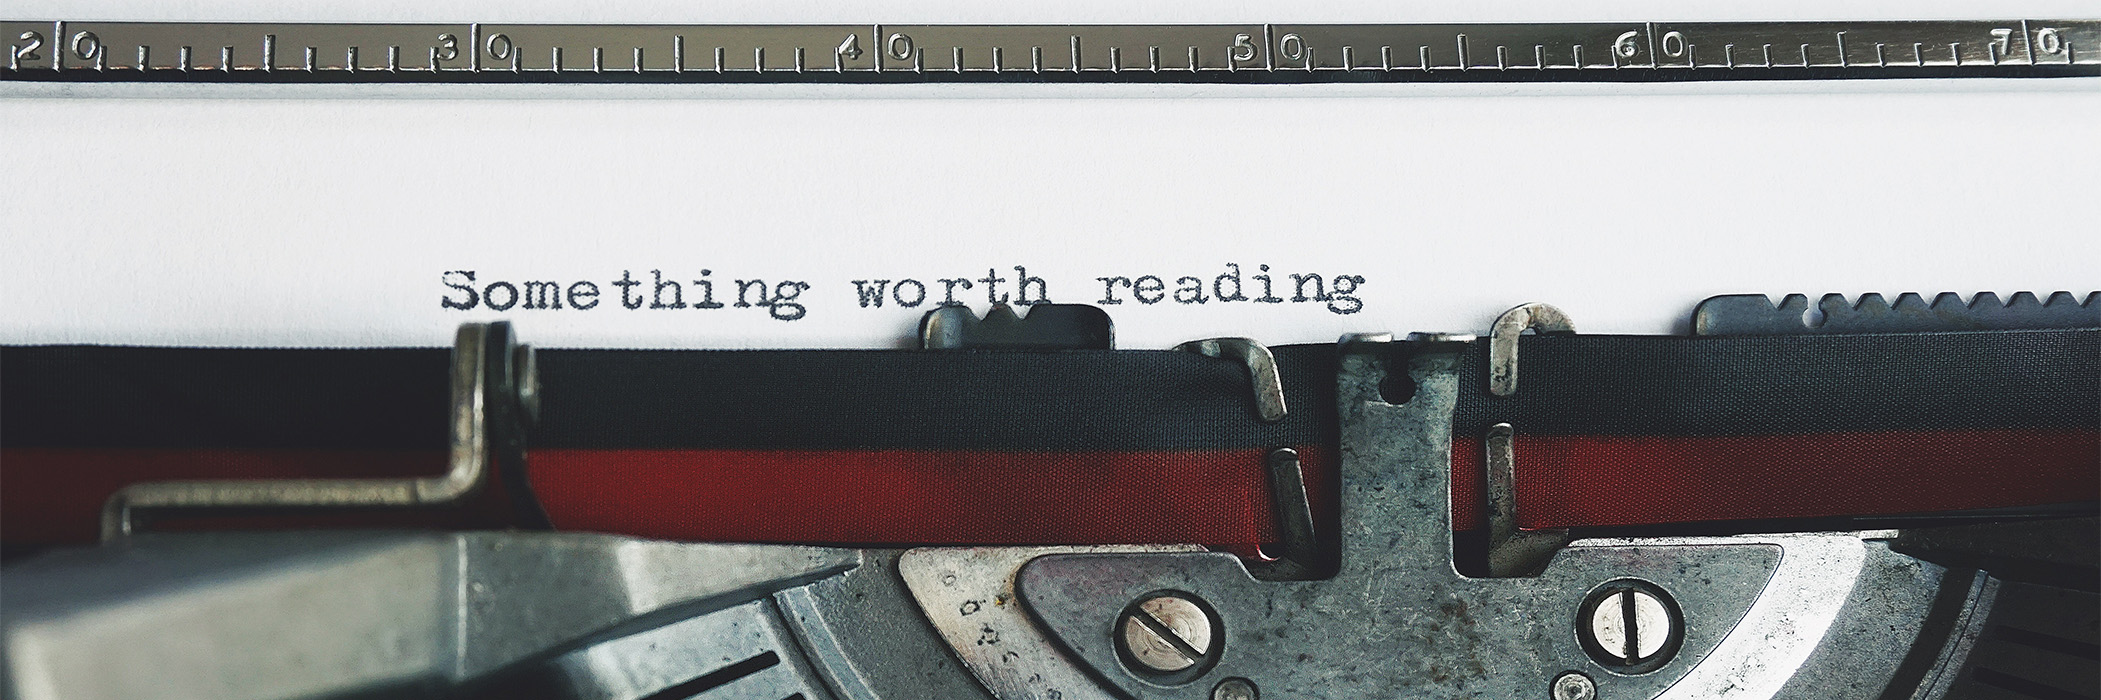 Typewriter typing "something worth reading"